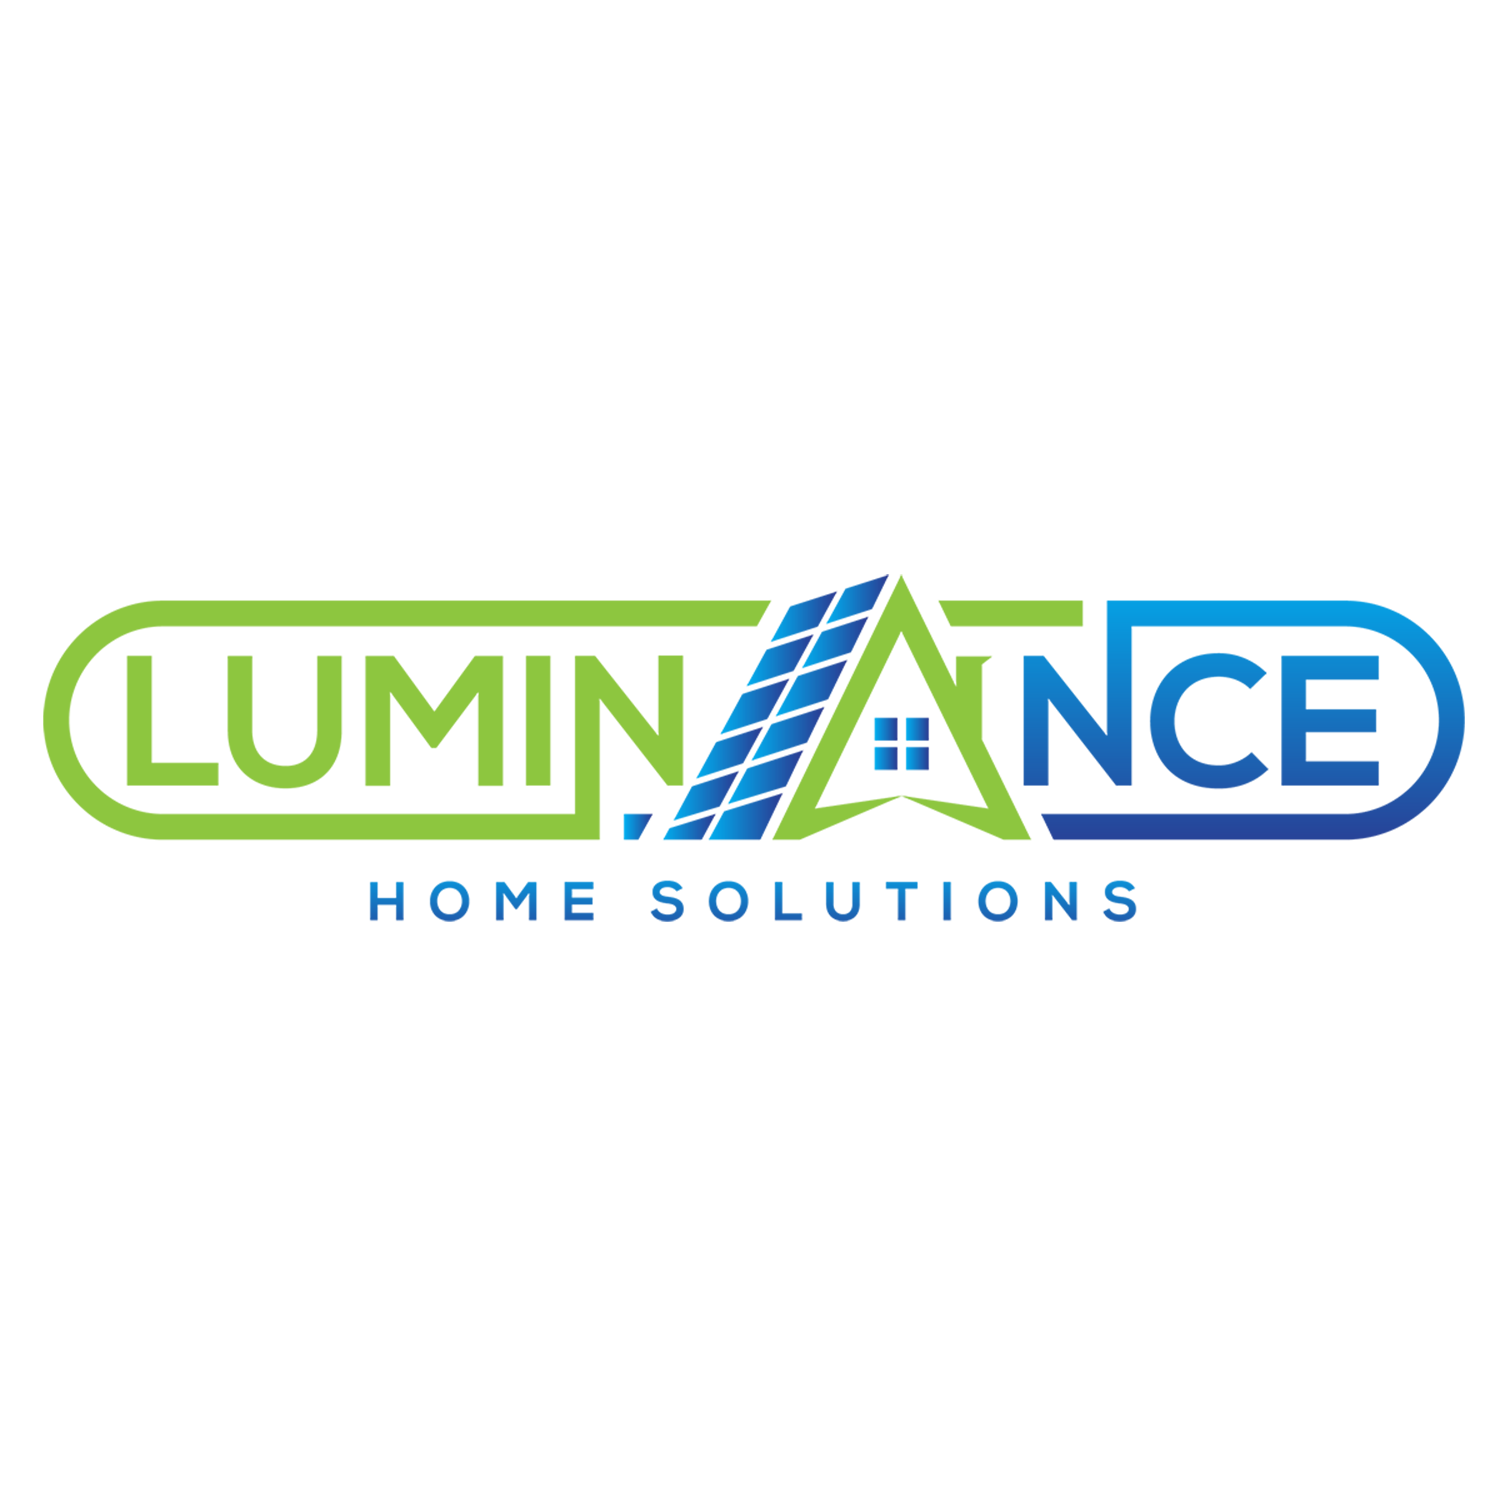 Luminance Home Solutions, a SunPower Partner